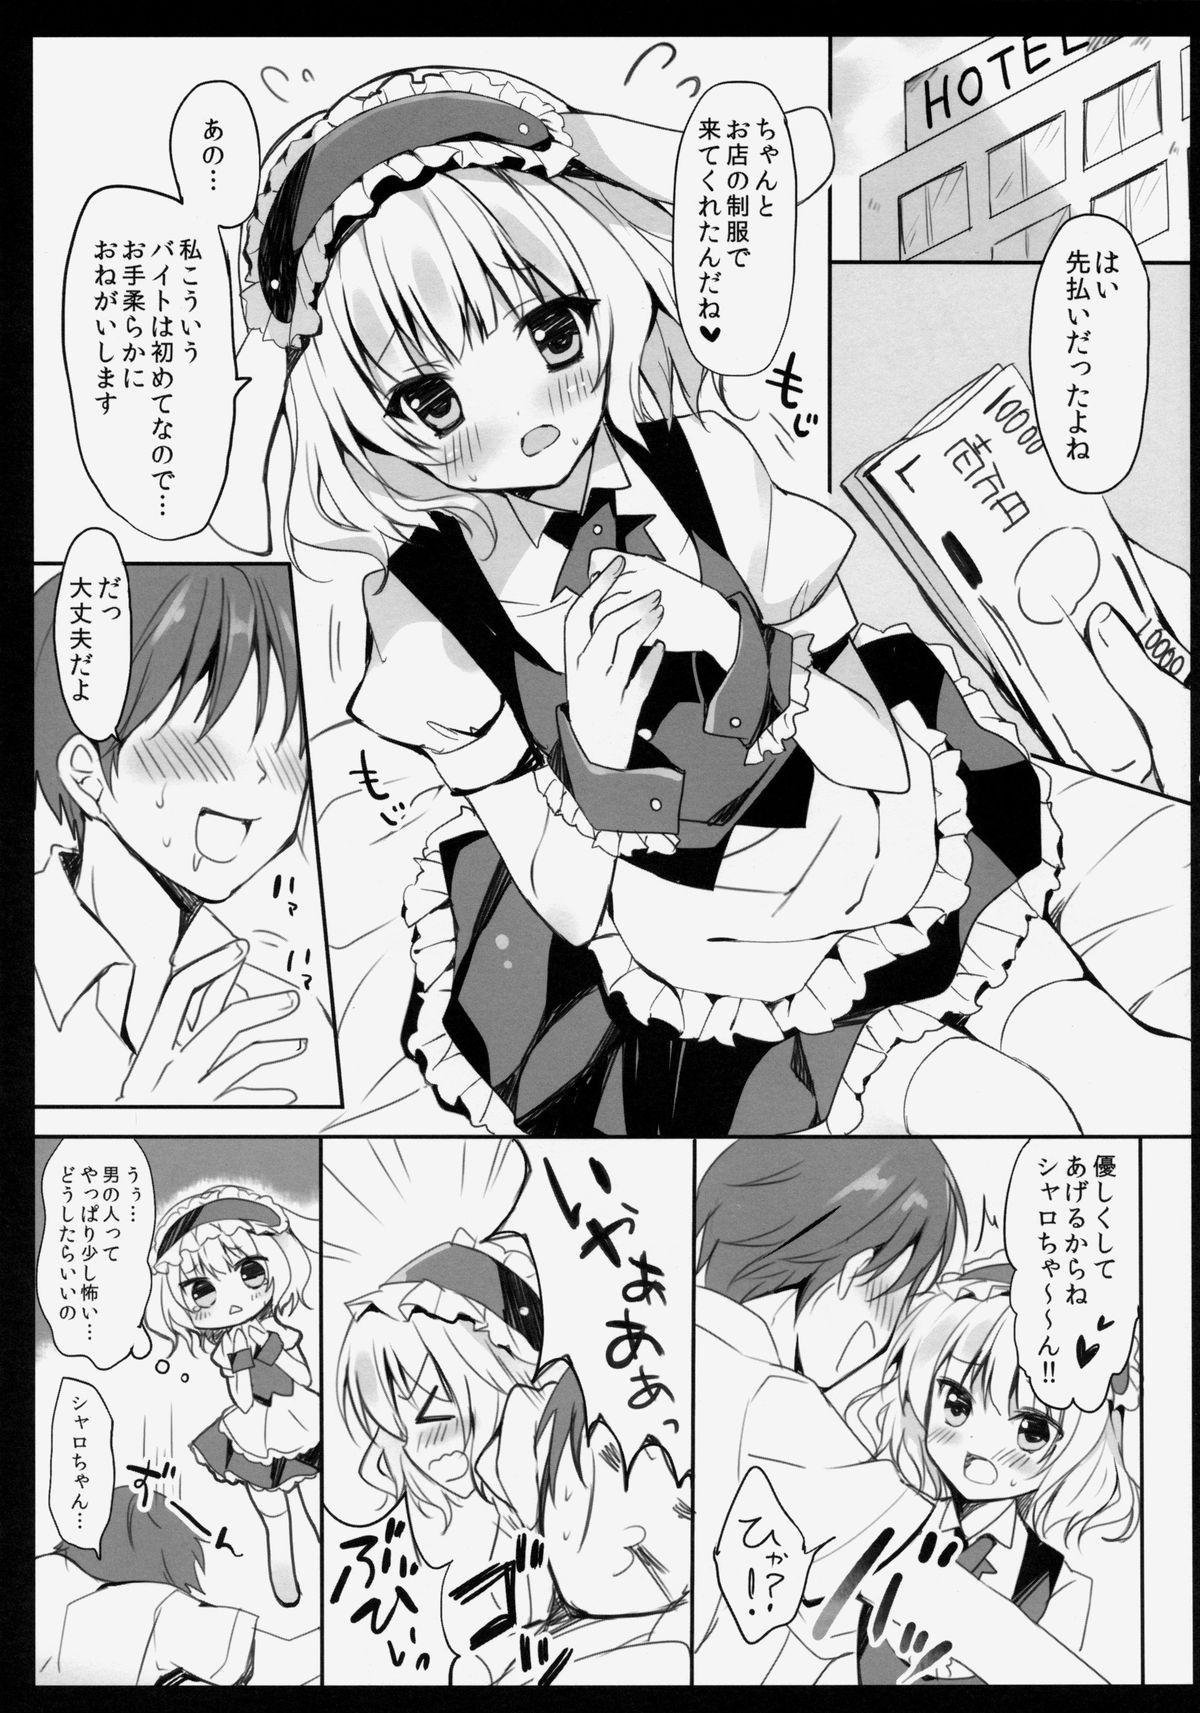 Sextape Gochuumon wa Sharo-chan desu ka? - Gochuumon wa usagi desu ka Nude - Page 4